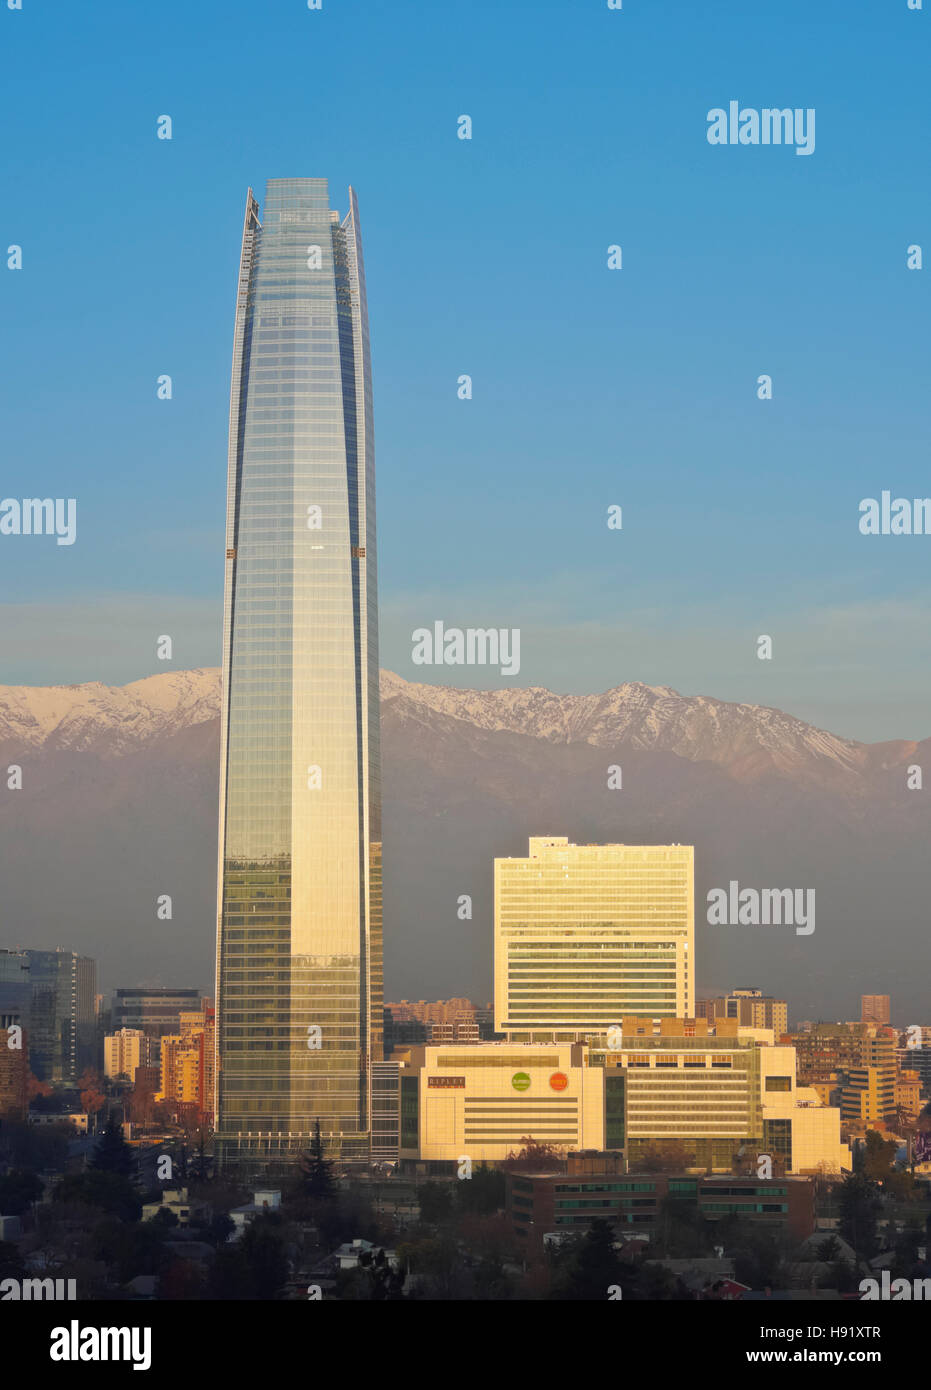 Chili Santiago vue depuis le Parque Metropolitano vers le haut a soulevé les bâtiments avec la plus haute tour Costanera Center Banque D'Images